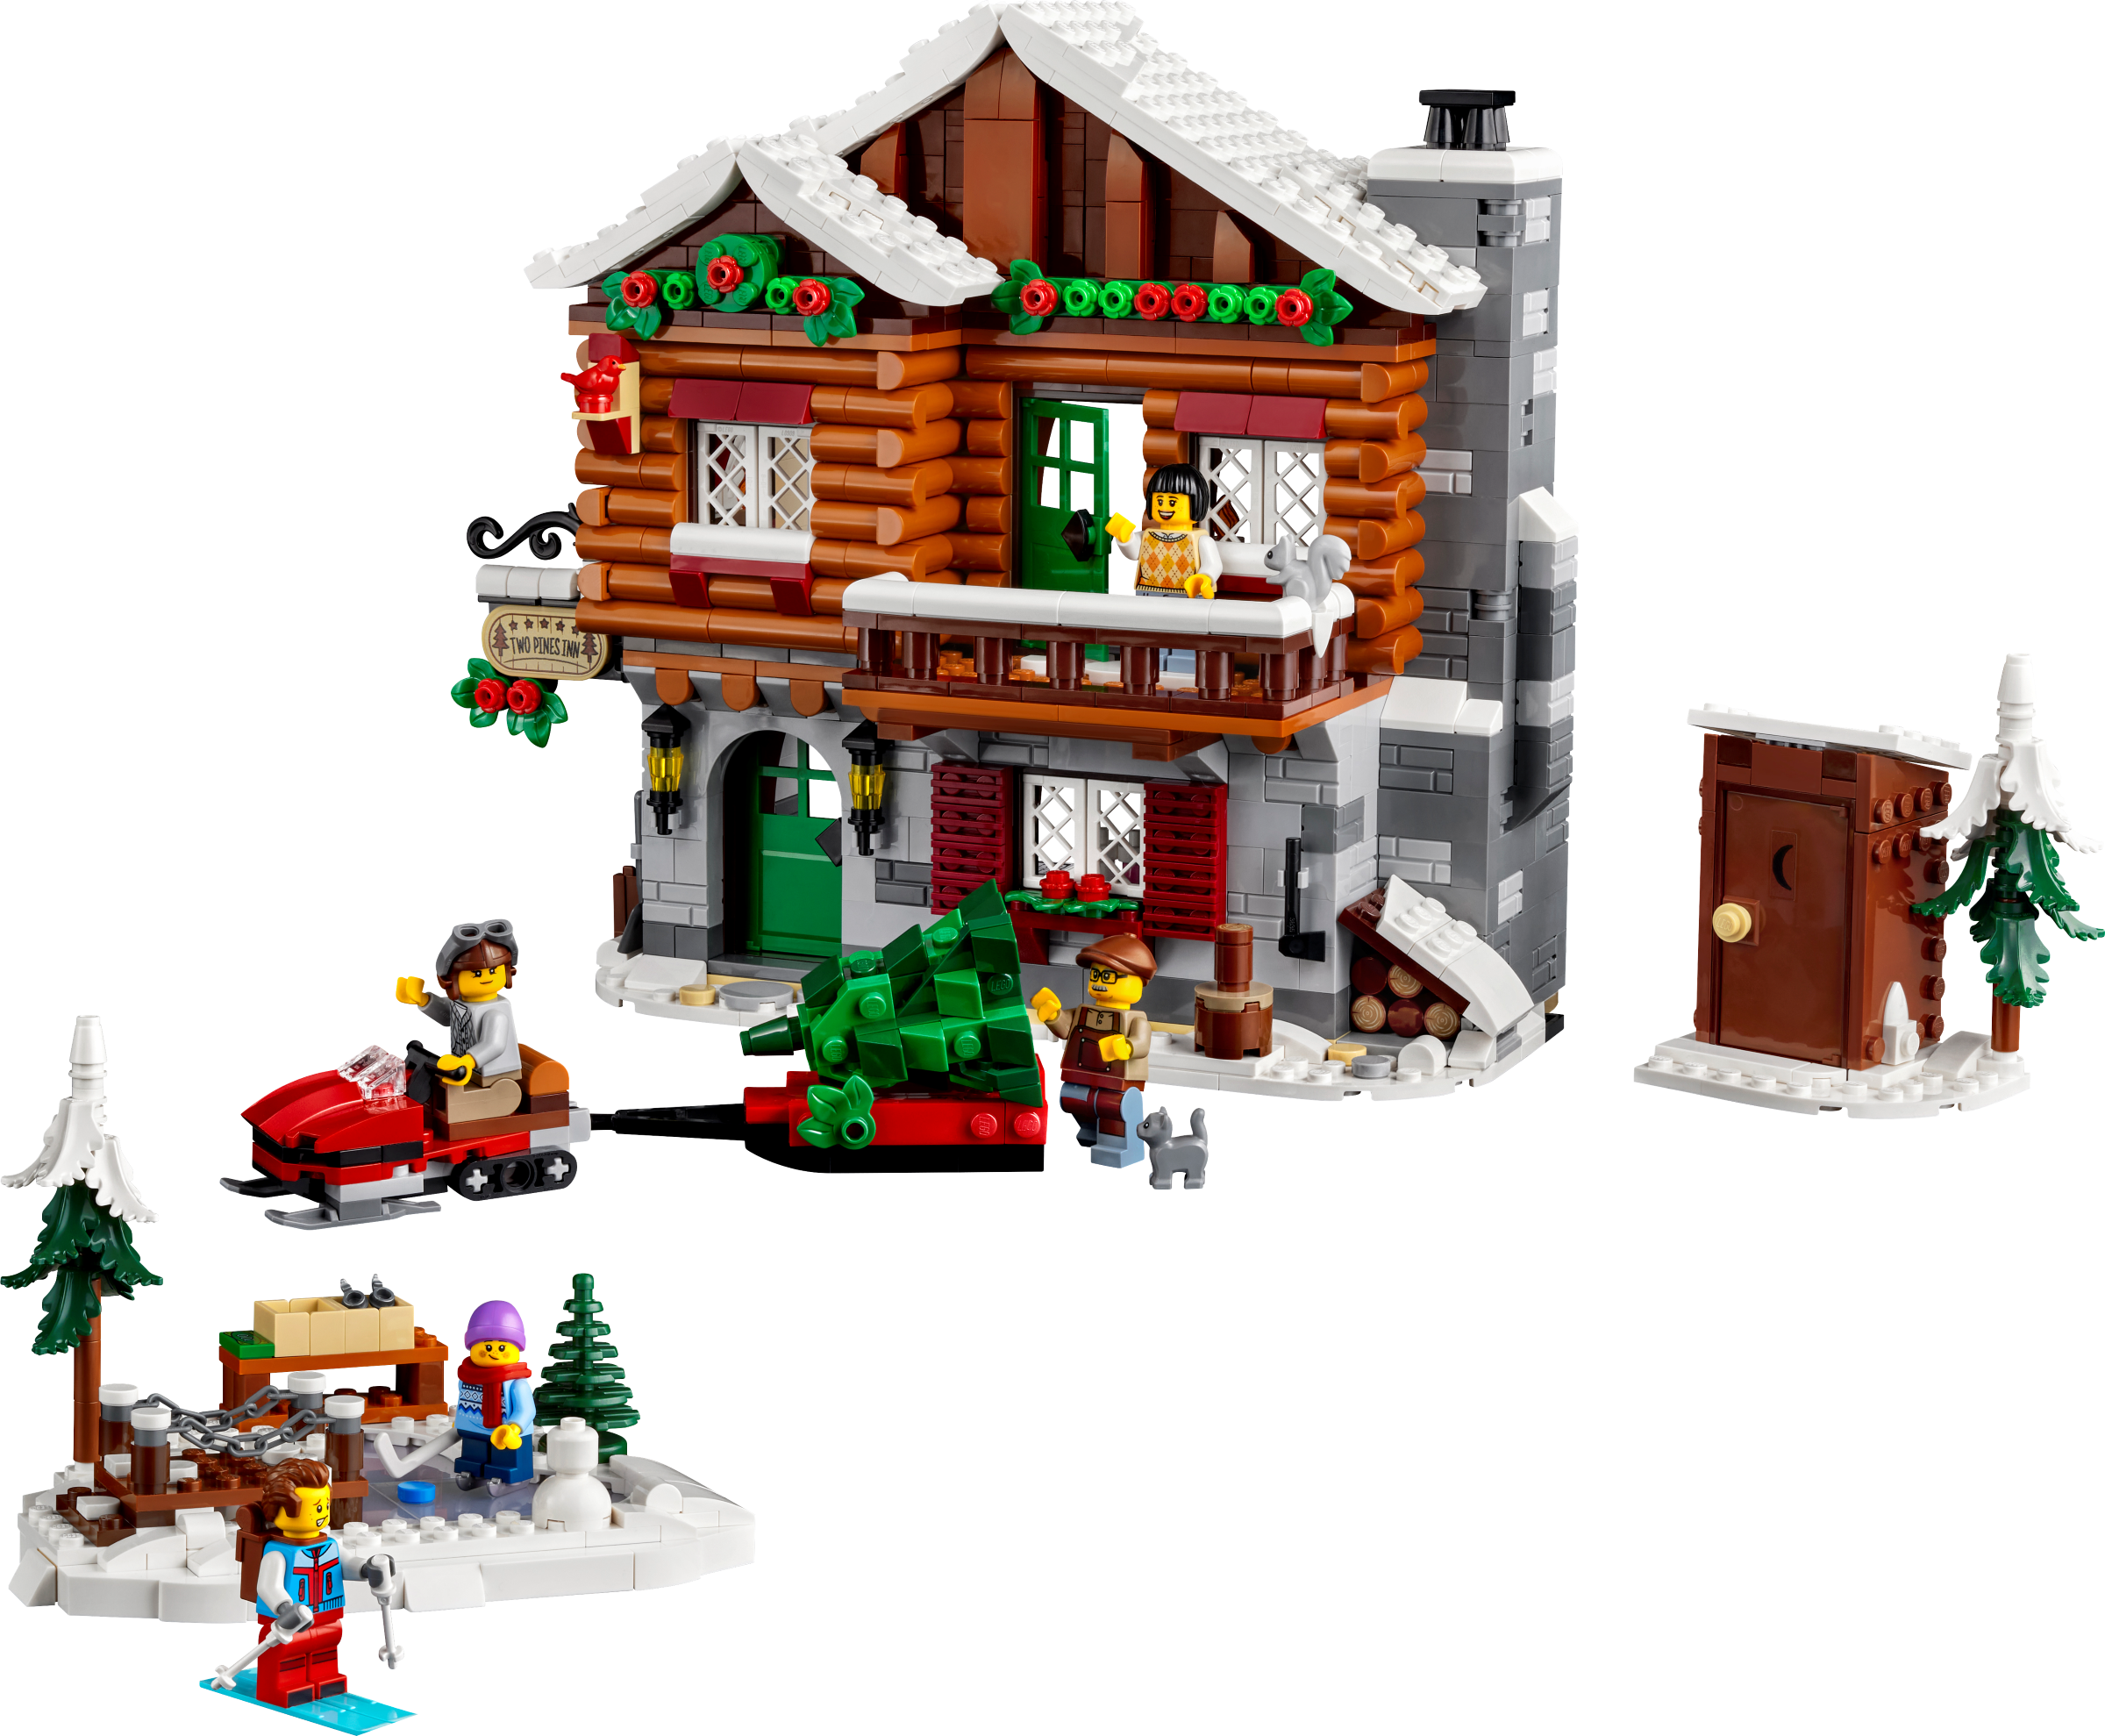 La maison de ville 31065 | Creator 3-en-1 | Boutique LEGO® officielle FR